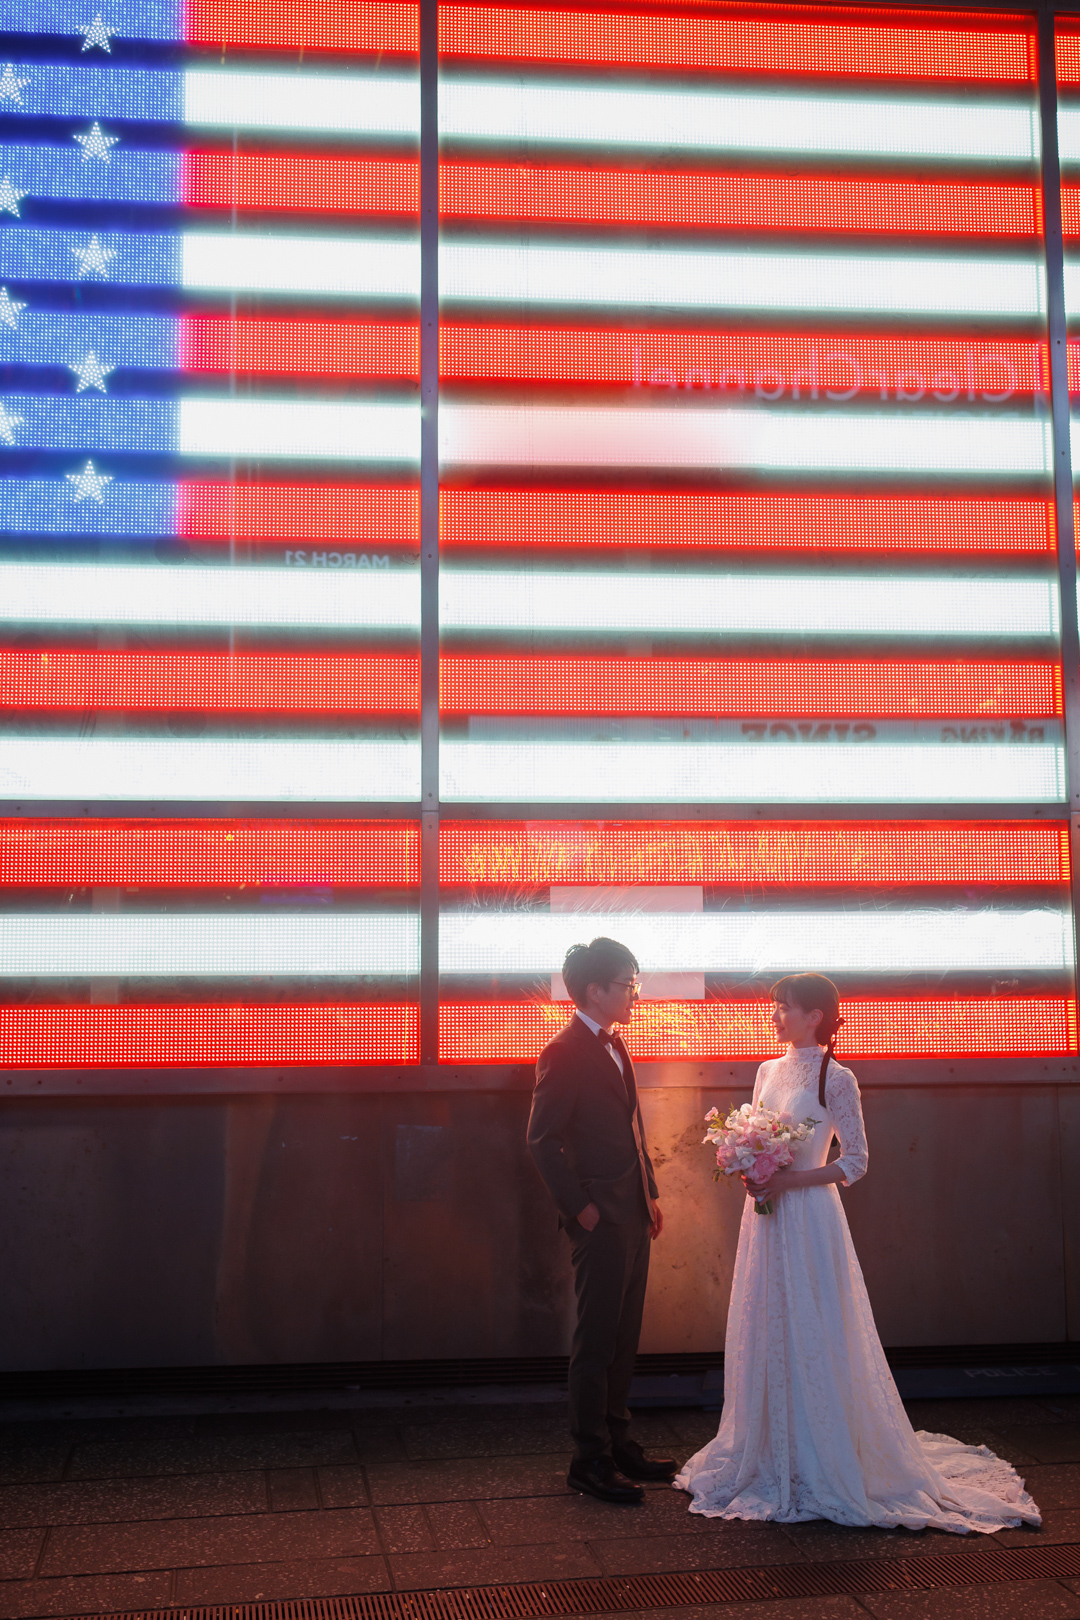 アメリカニューヨークの前撮り/フォトウェディング/アメリカ国旗のネオンサインの前に立つ花嫁花婿。